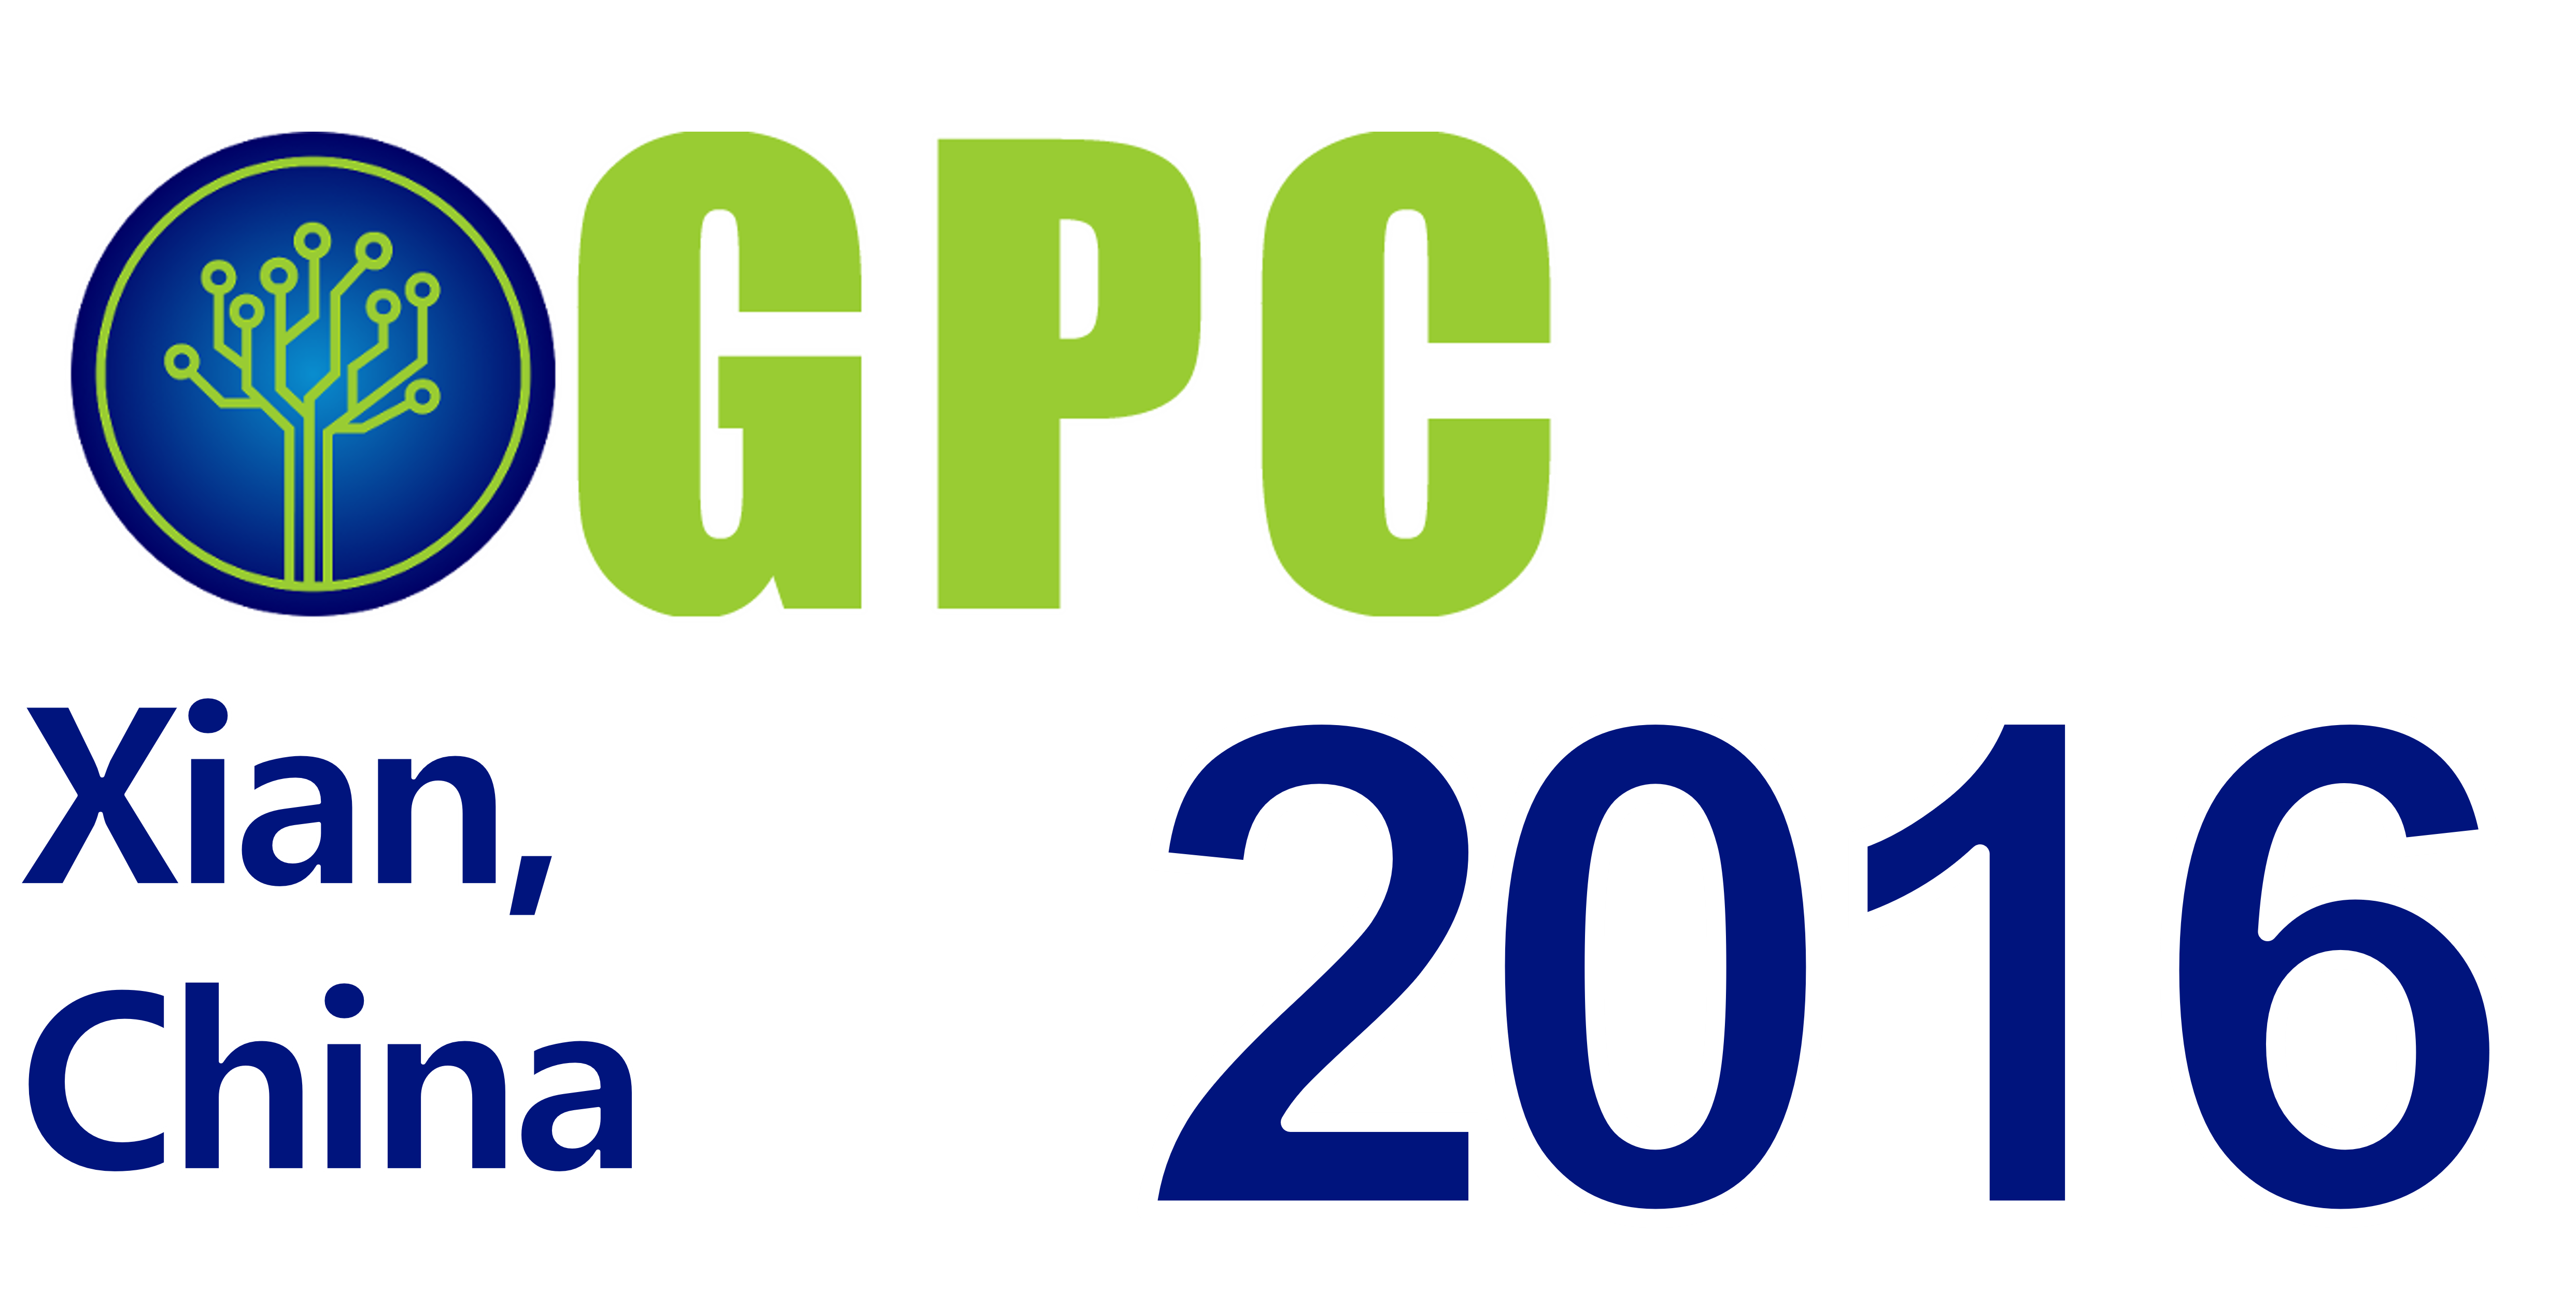 GPC 2016